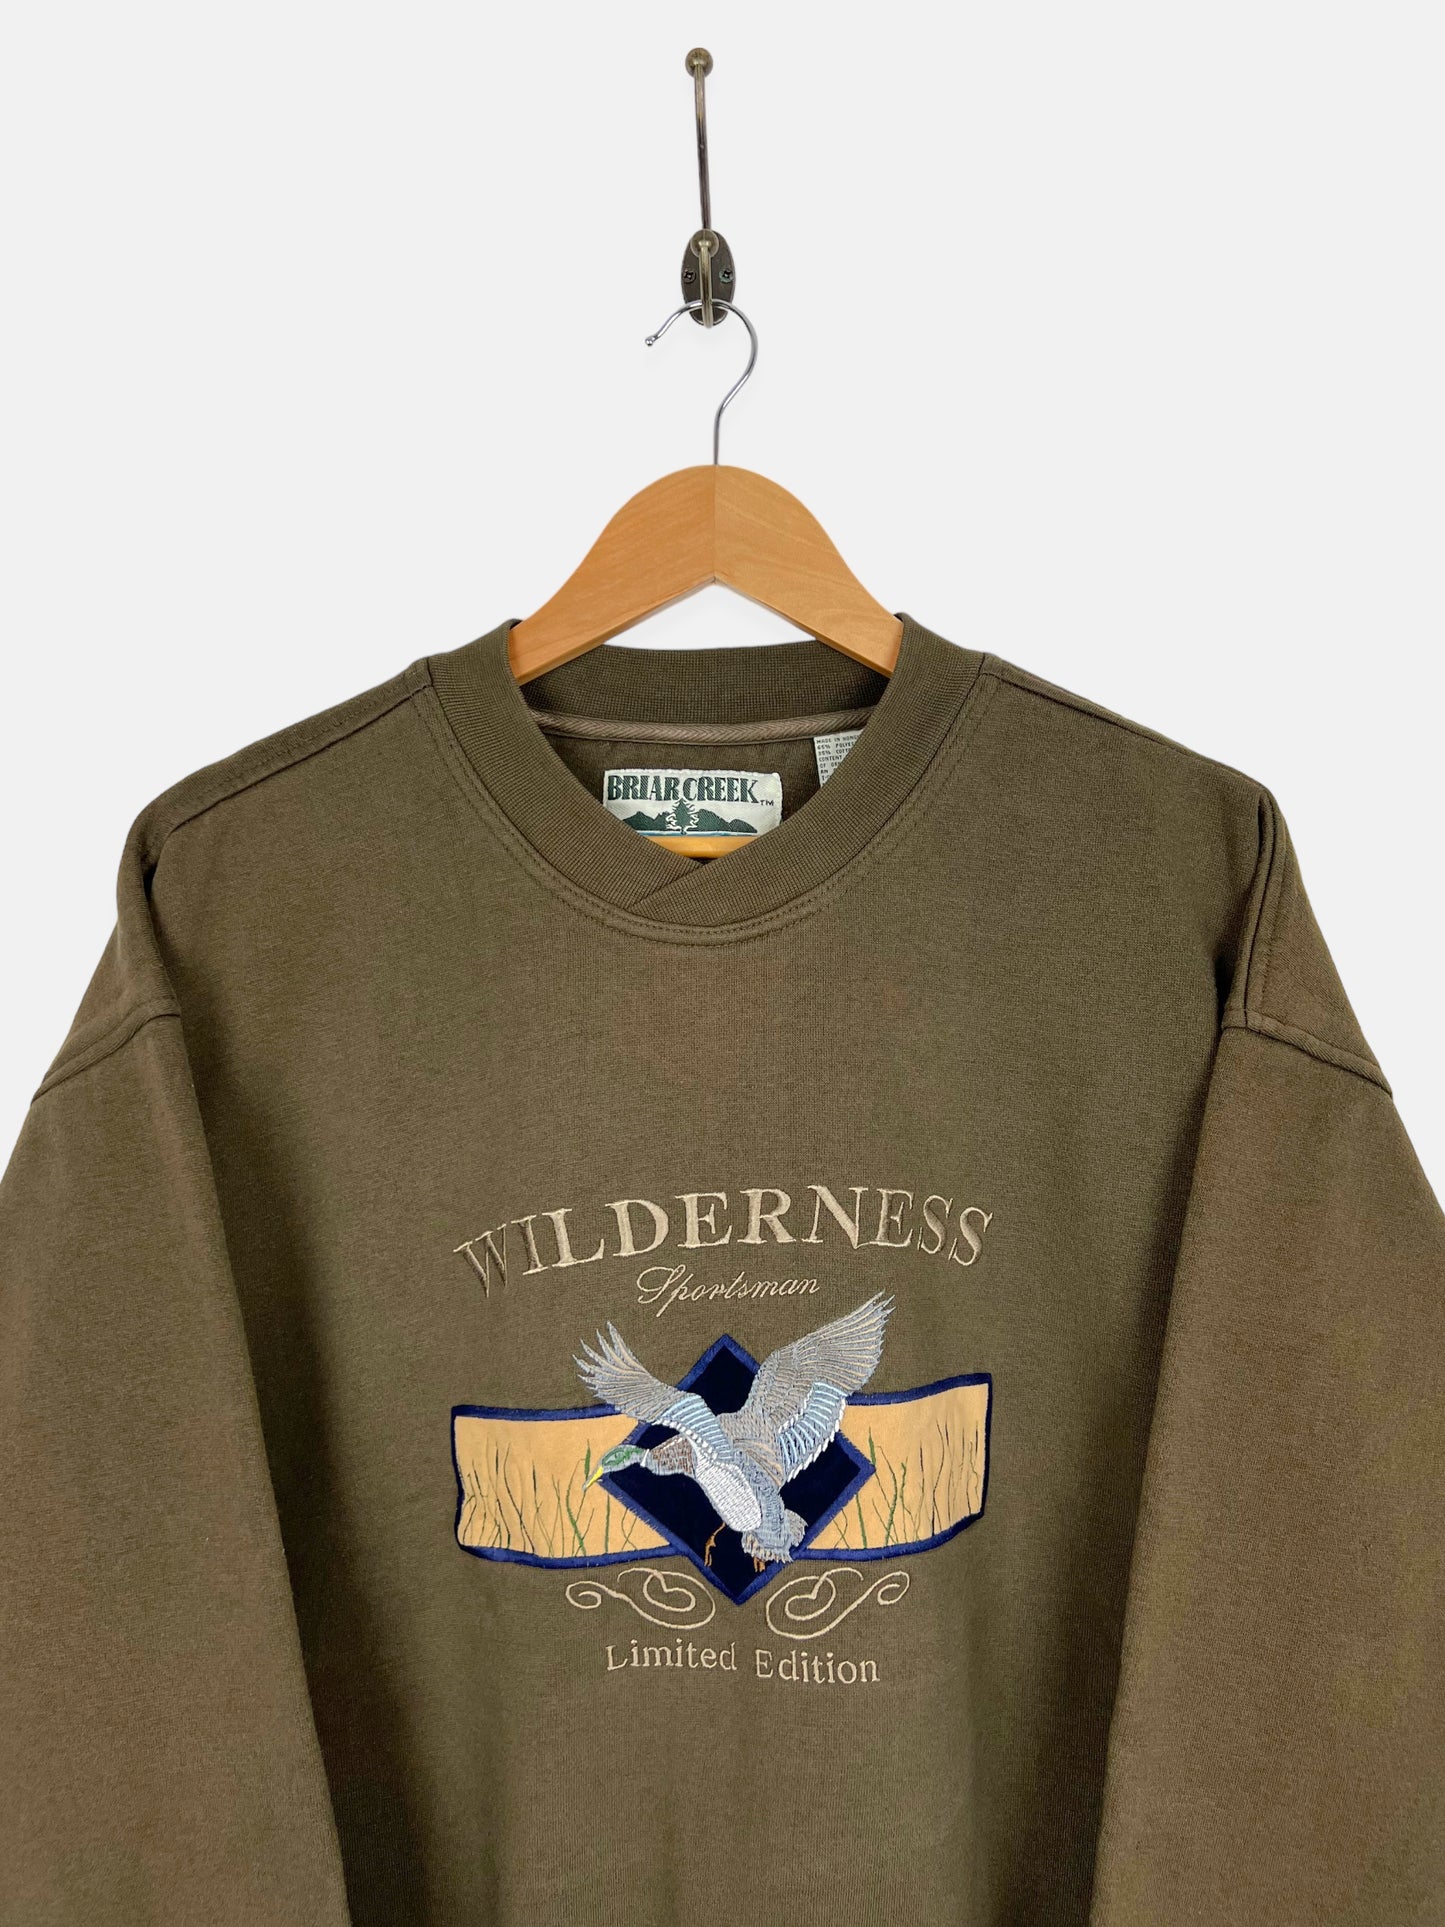 90's Wilderness Sportsman Embroidered Vintage Sweatshirt Size M